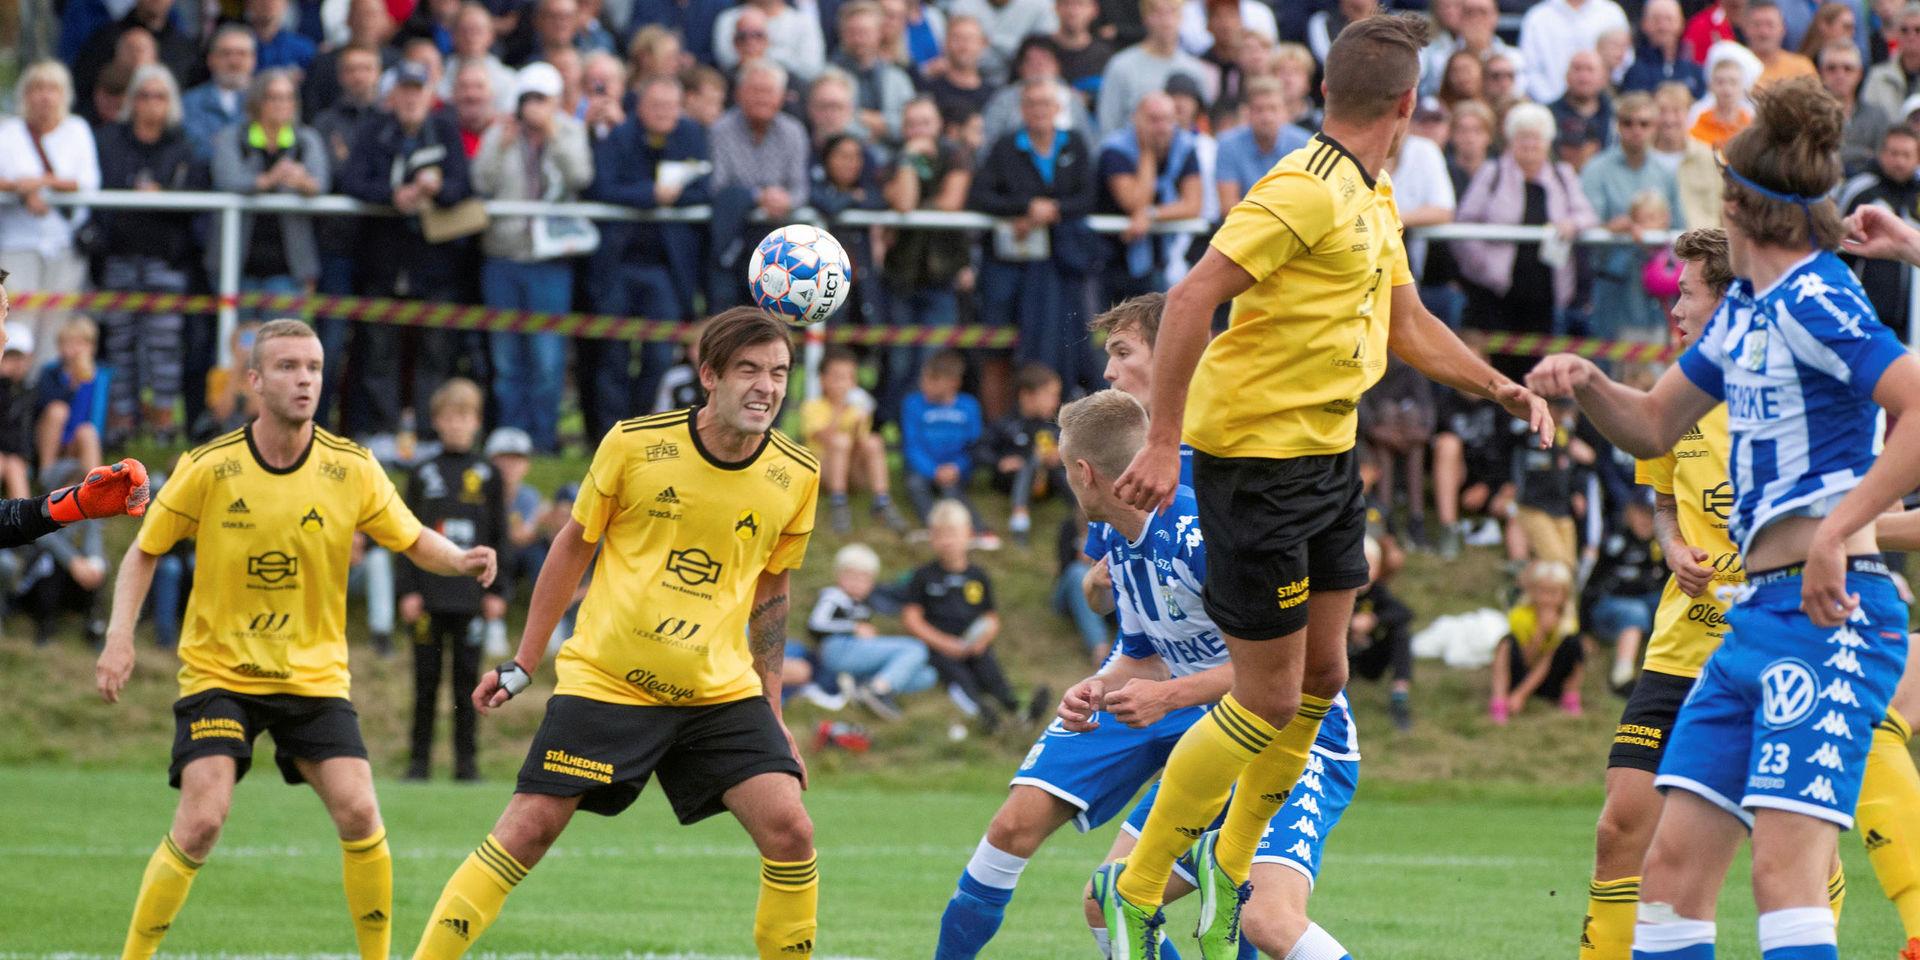 Nästan 2 000 åskådare såg Astrio mot allsvenska IFK Göteborg på Söndrums IP i fjol. Nu får division 3-klubben besök av ett nytt elitlag.